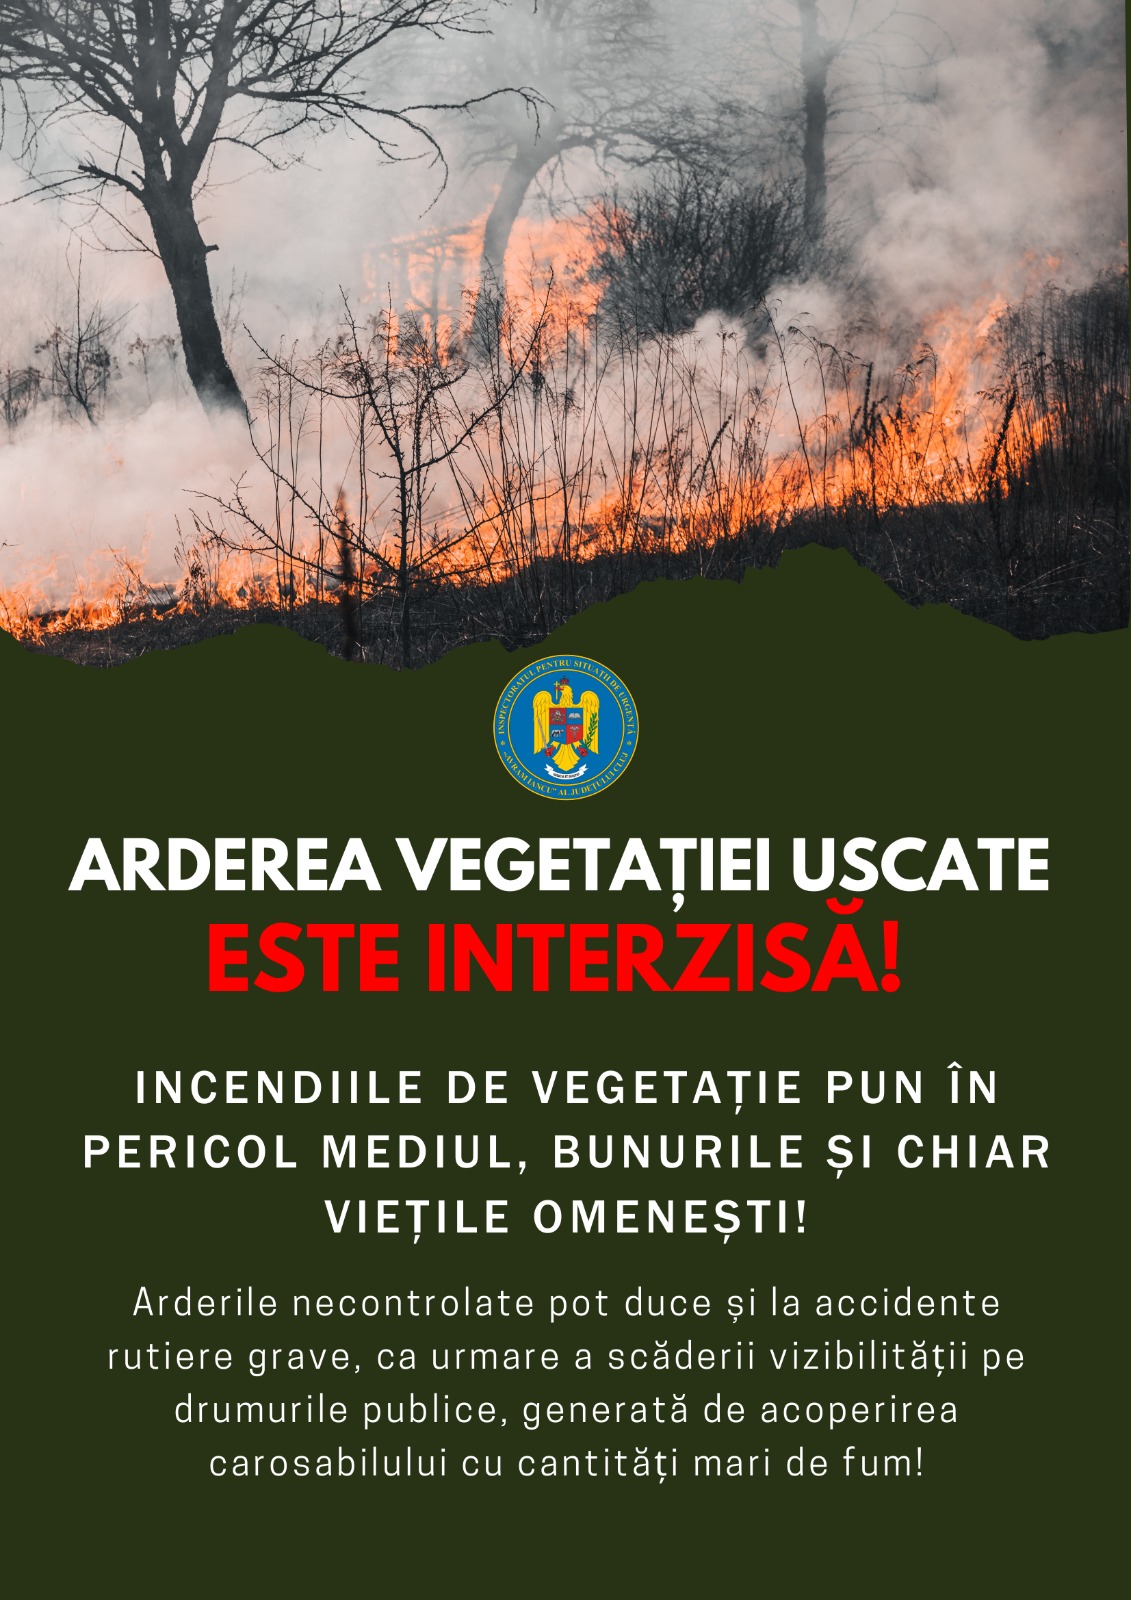 Stop incendiilor de vegetatie